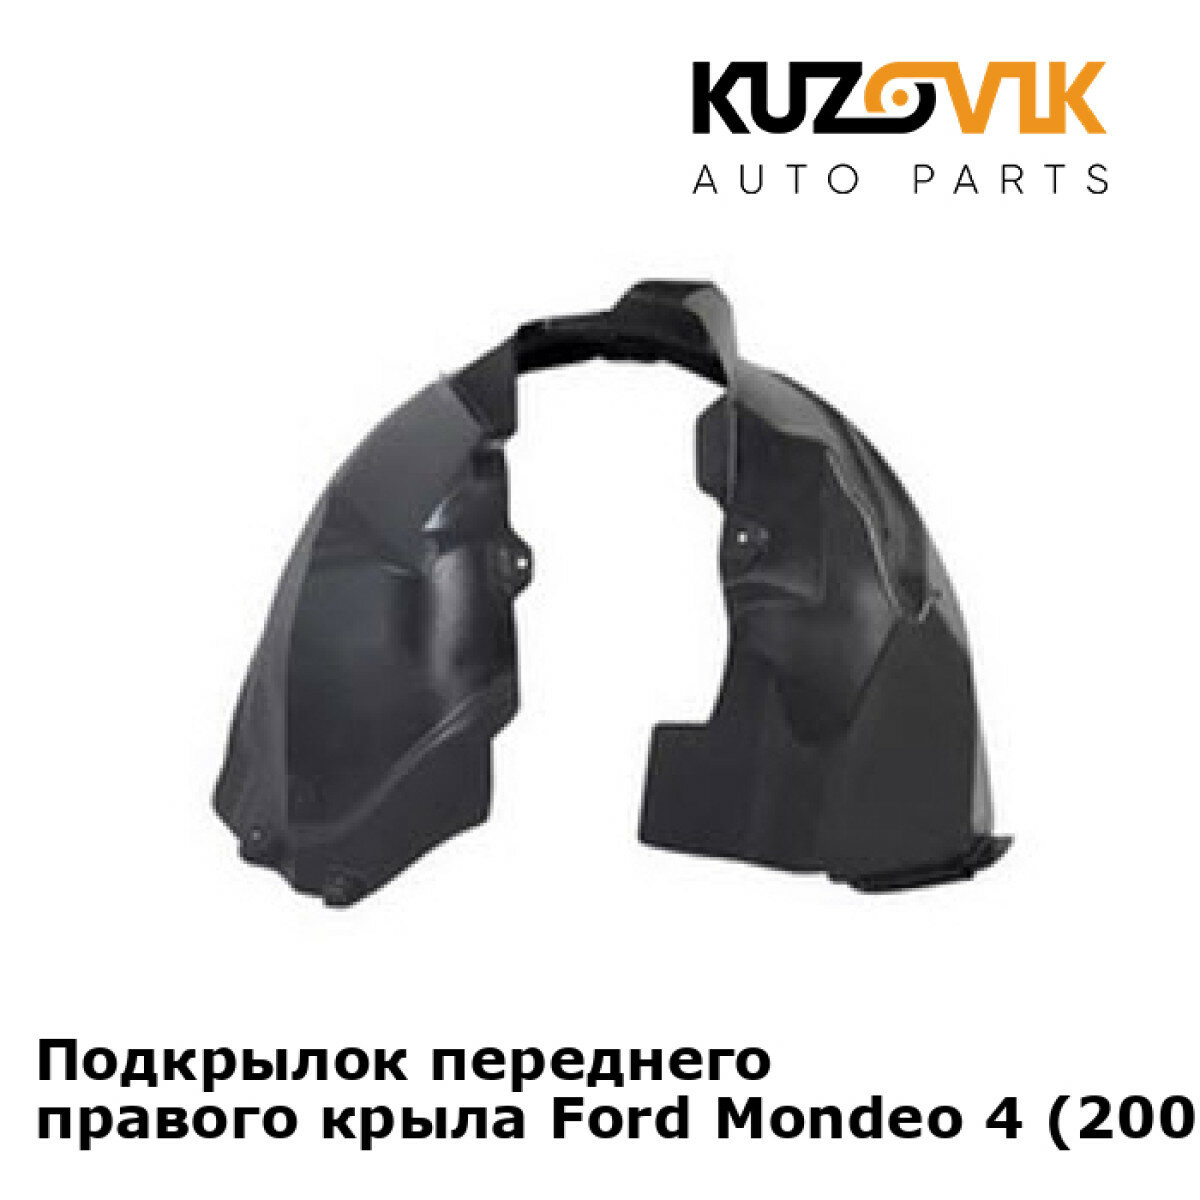 Подкрылок переднего правого крыла Ford Mondeo 4 (2007-)